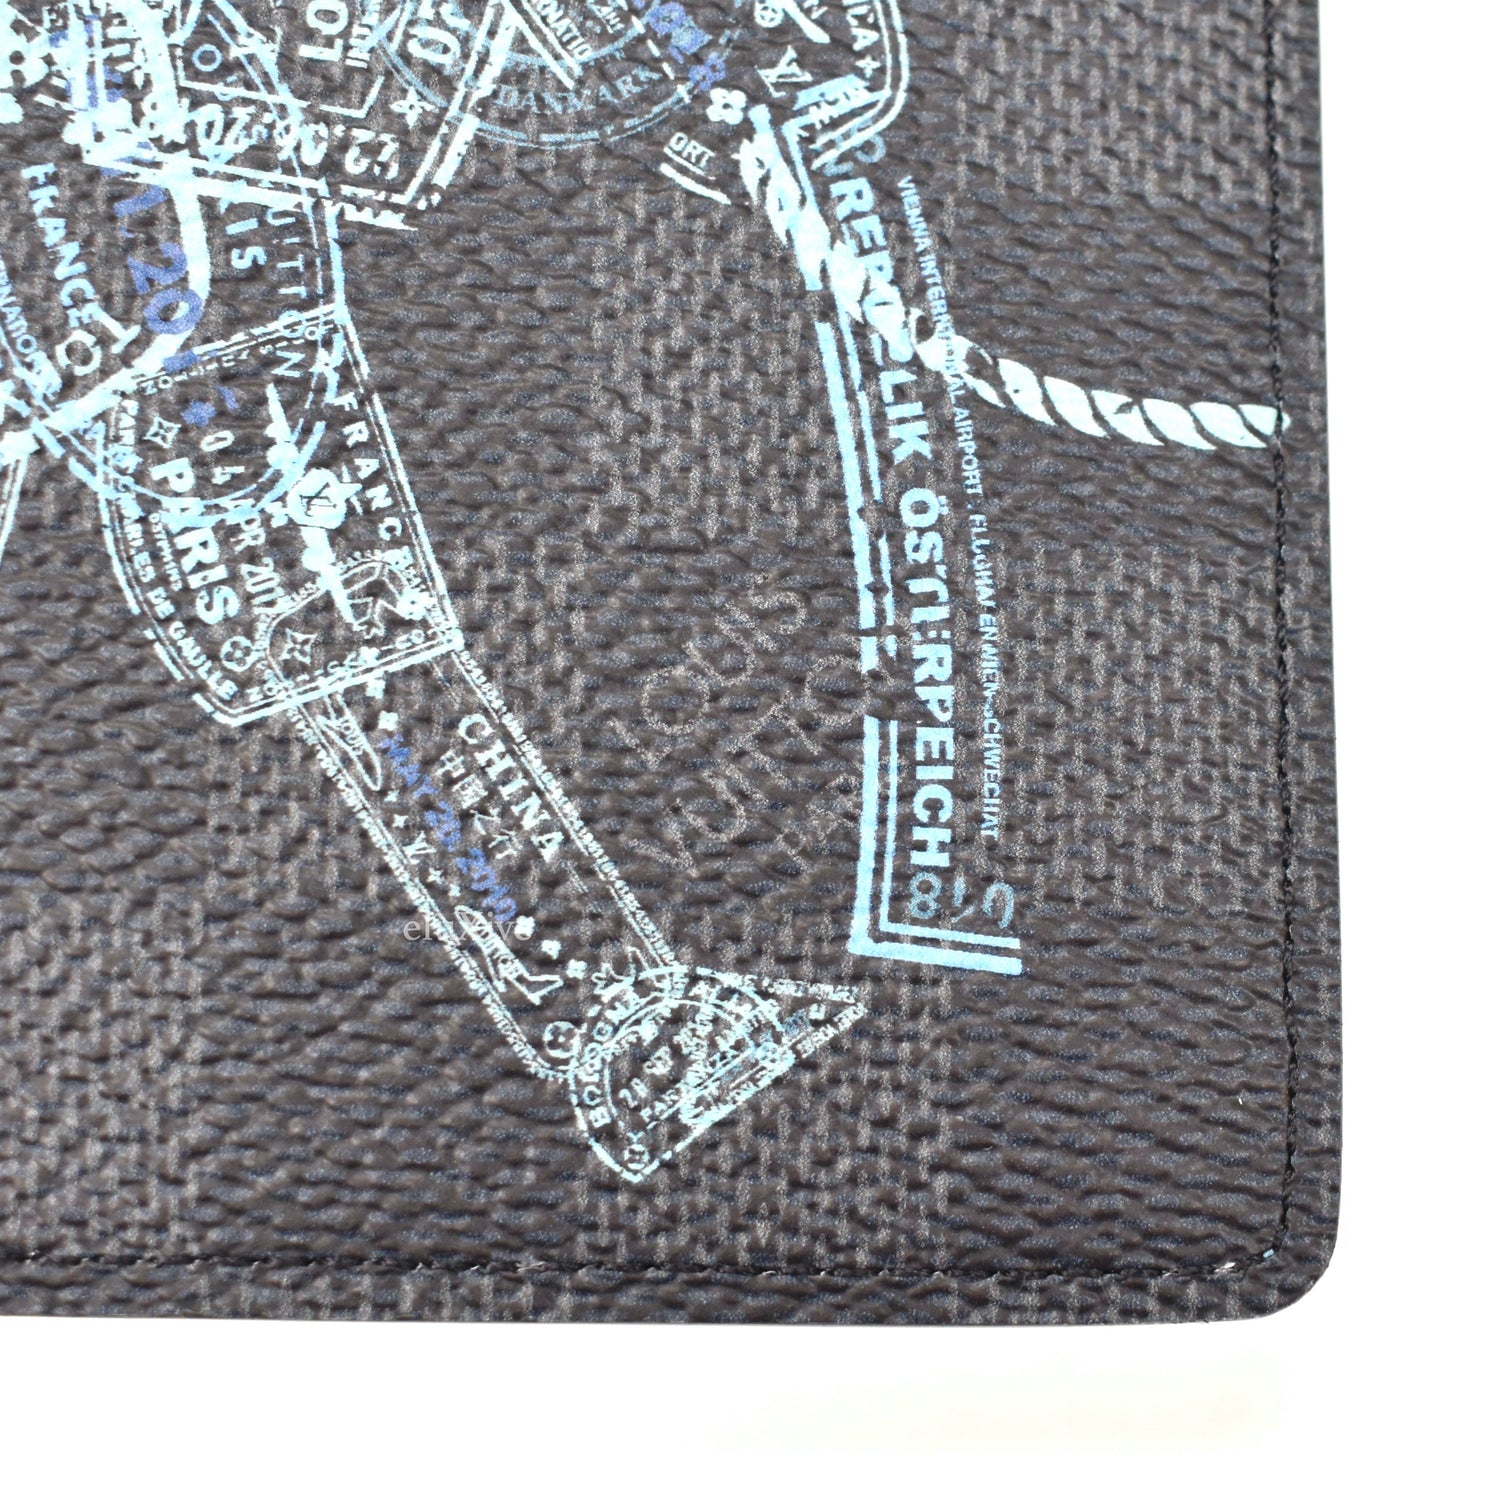 Louis Vuitton Damier Graffiti Wallet & Passport Cover Holder Wallet